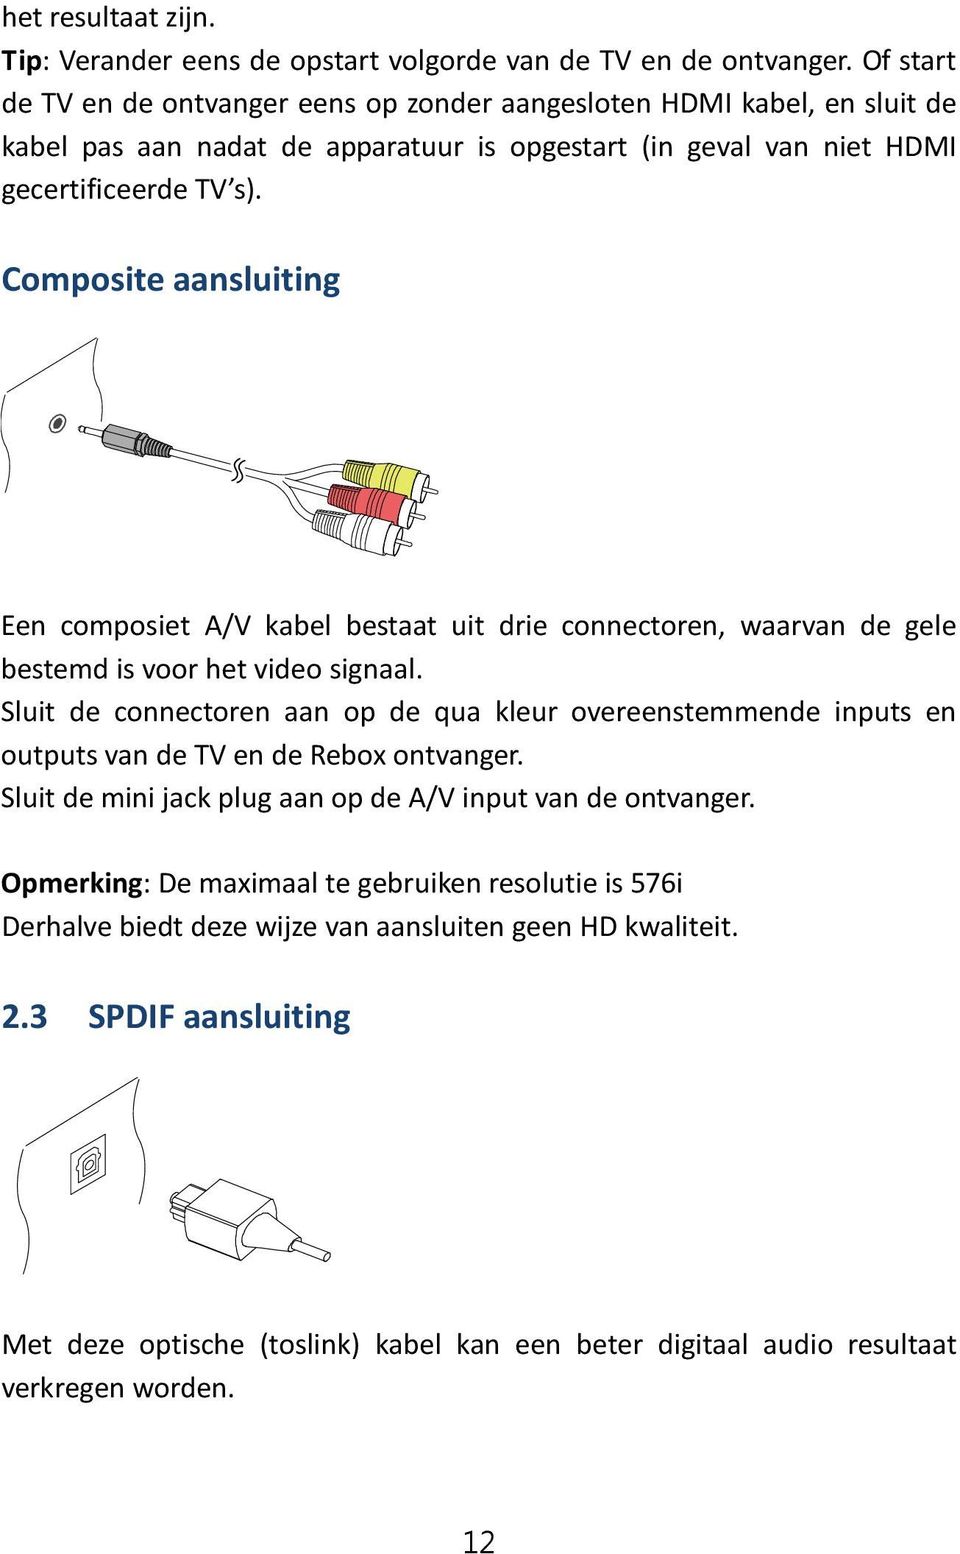 Composite aansluiting Een composiet A/V kabel bestaat uit drie connectoren, waarvan de gele bestemd is voor het video signaal.